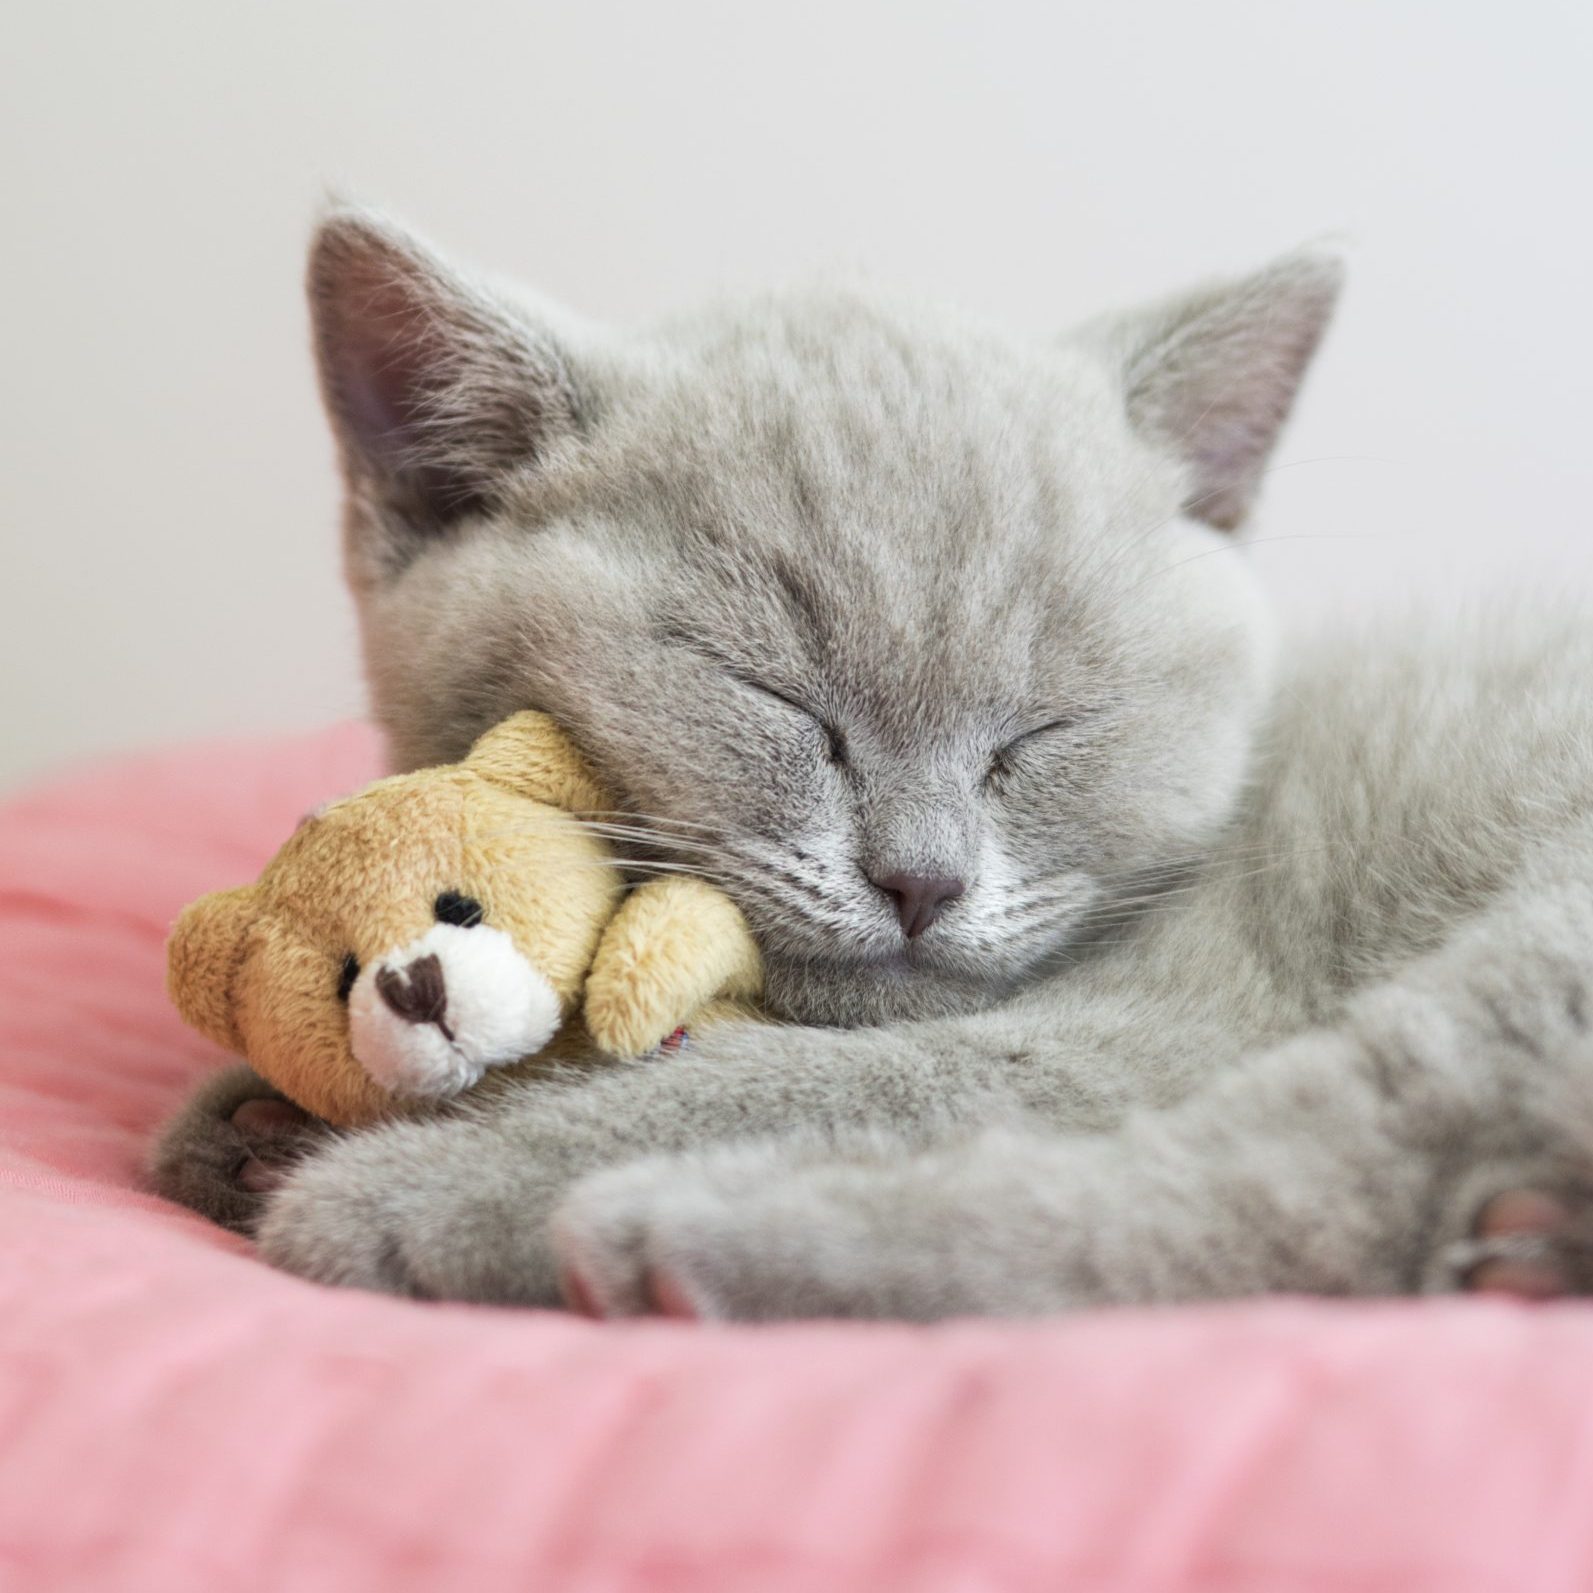 50 Cute Kitten Photos That Will Make You Melt (2022)